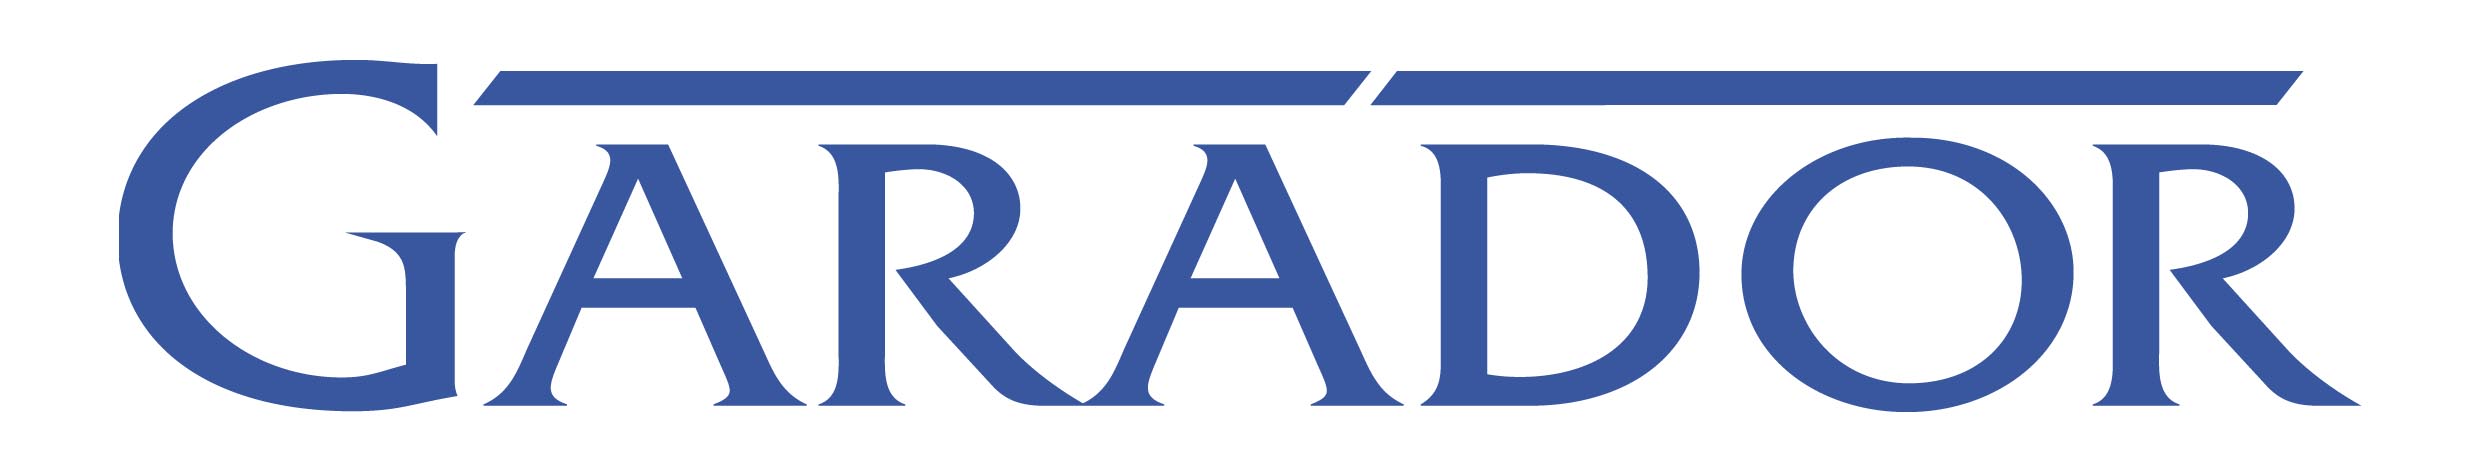 Garador Logo.jpg